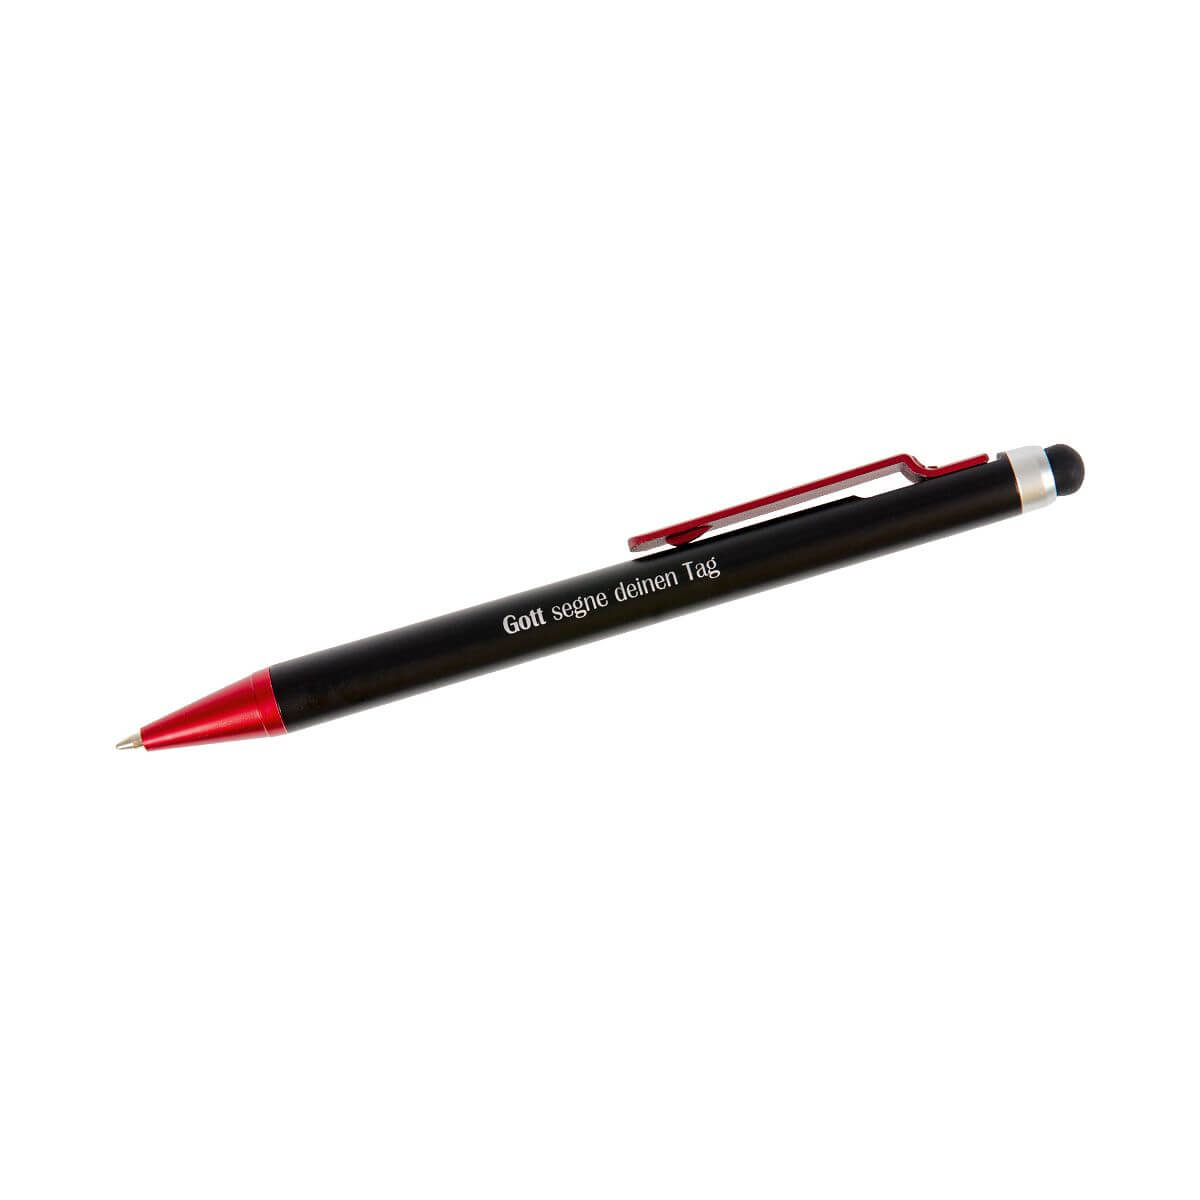 Kugelschreiber - Gott segne deinen Tag